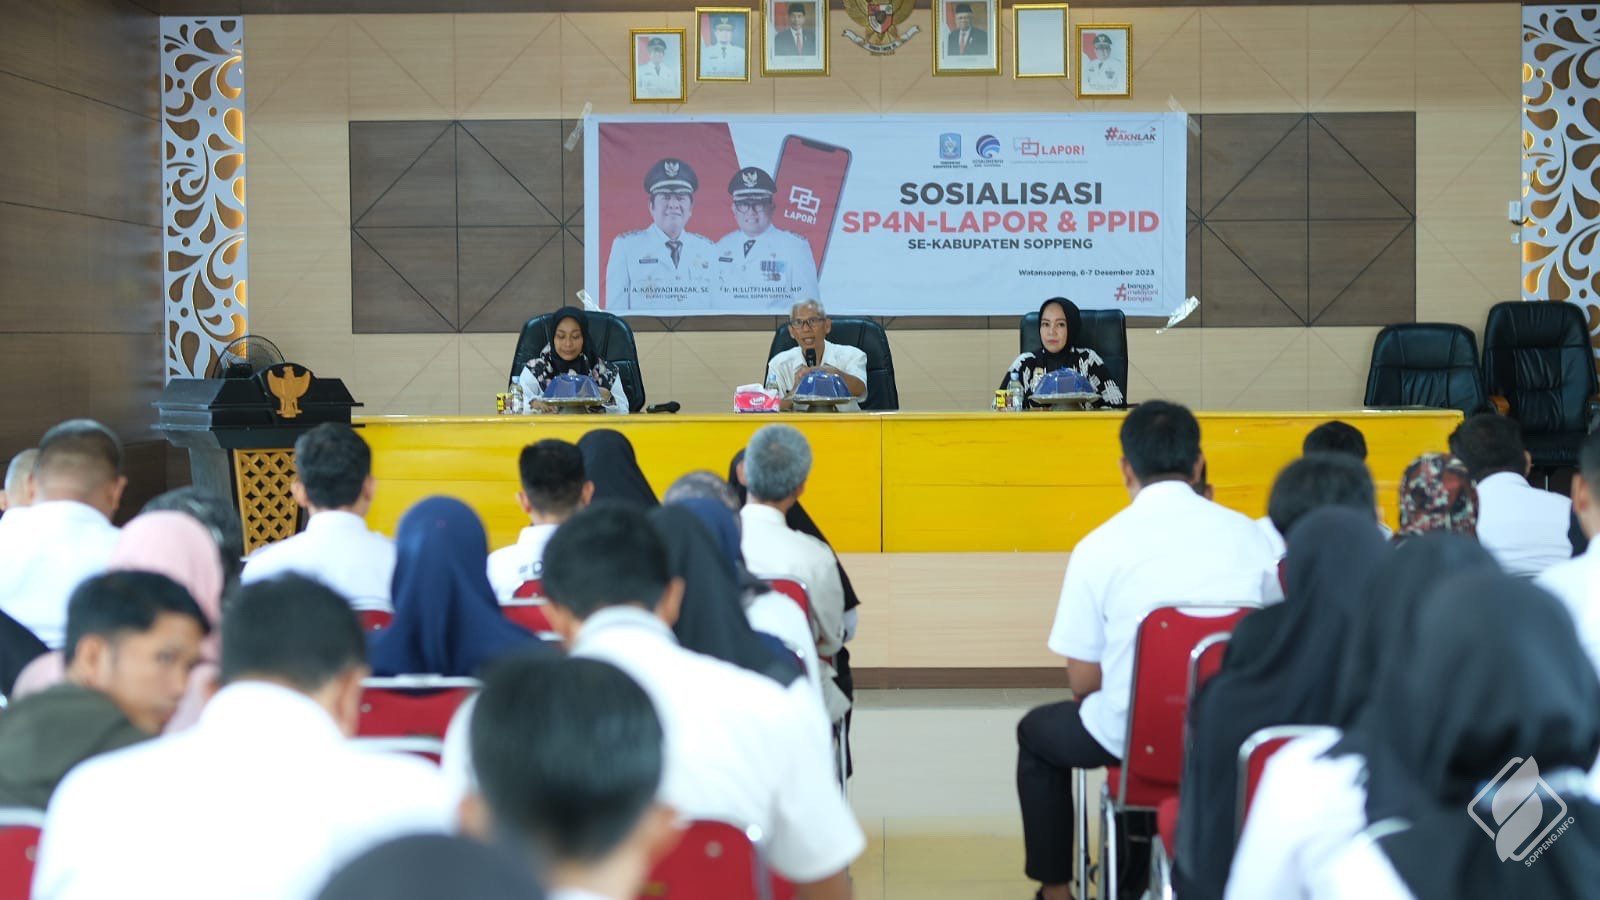 Pemkab Soppeng Sosialisasi Bimbingan Teknis SP4N - LAPOR & PPID